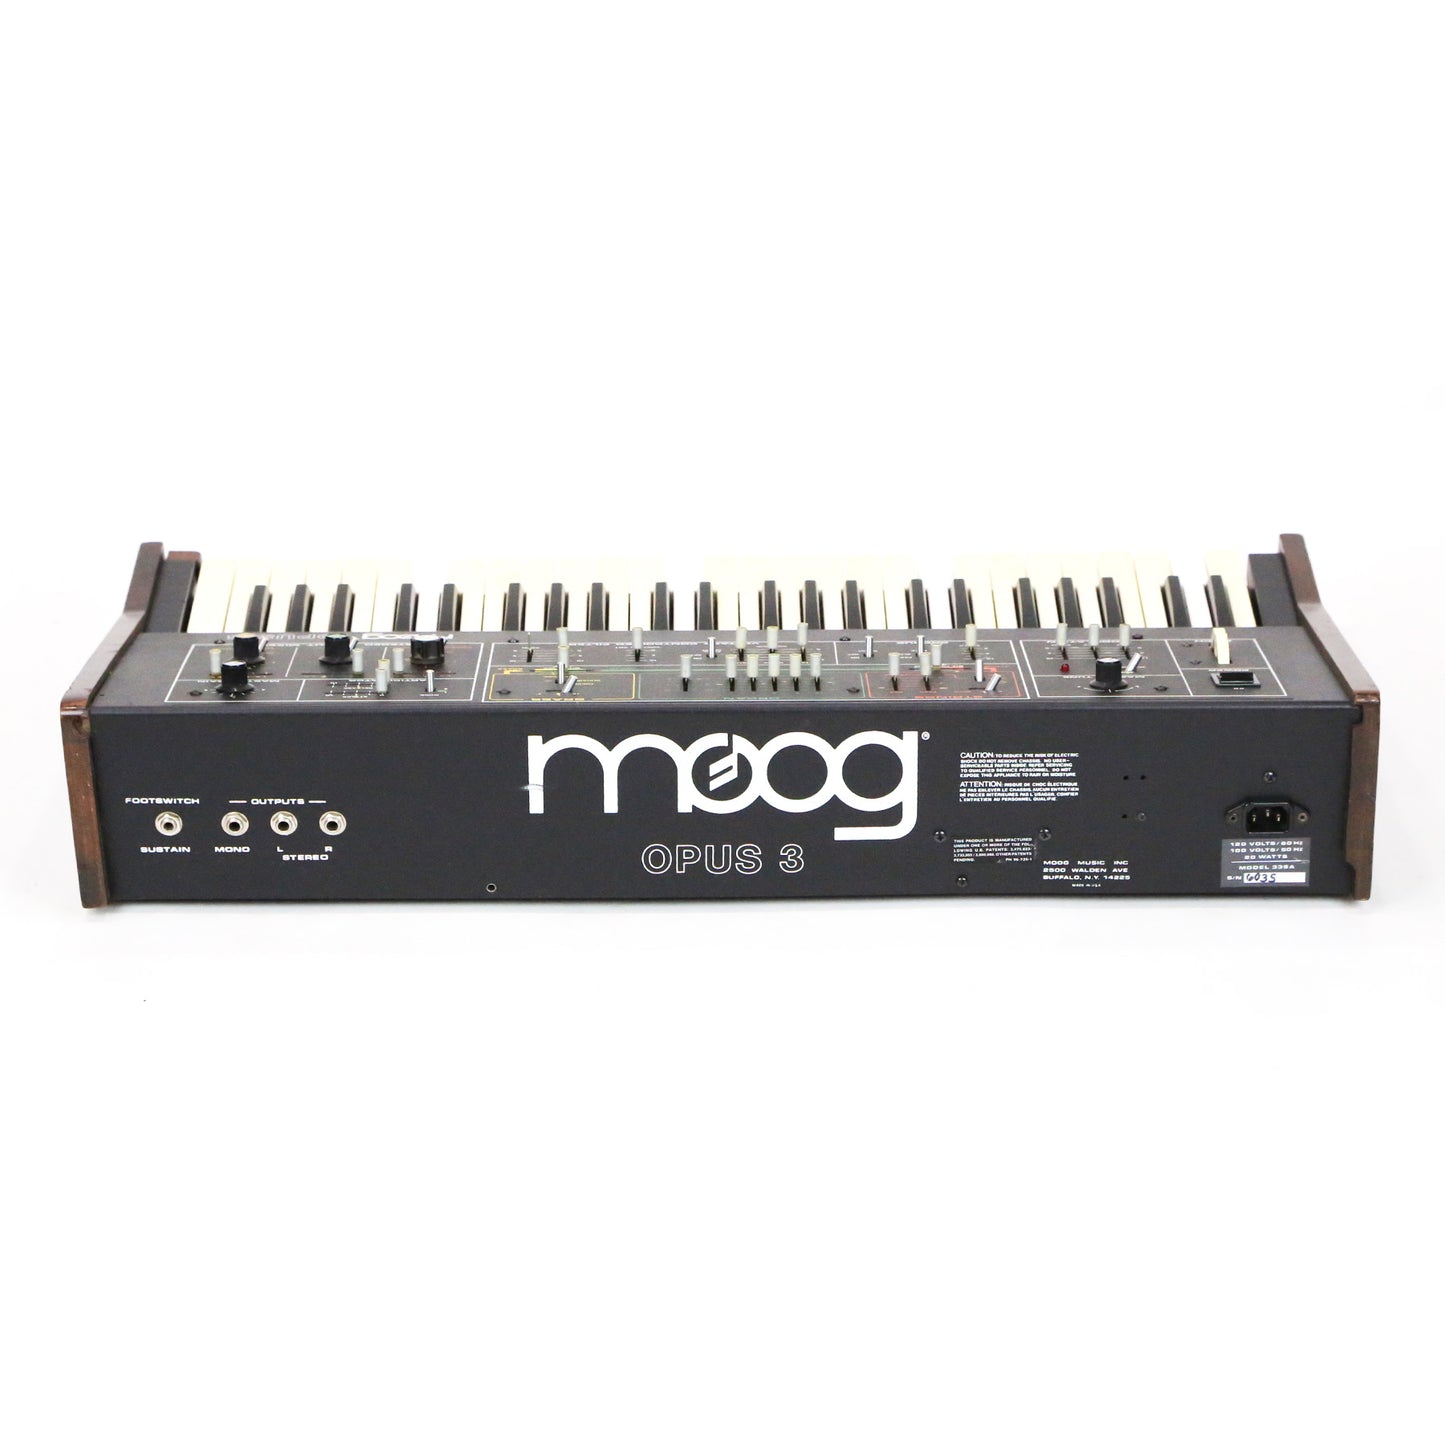 1982 Moog Opus 3 Vintage Analog Synthesizer Keyboard